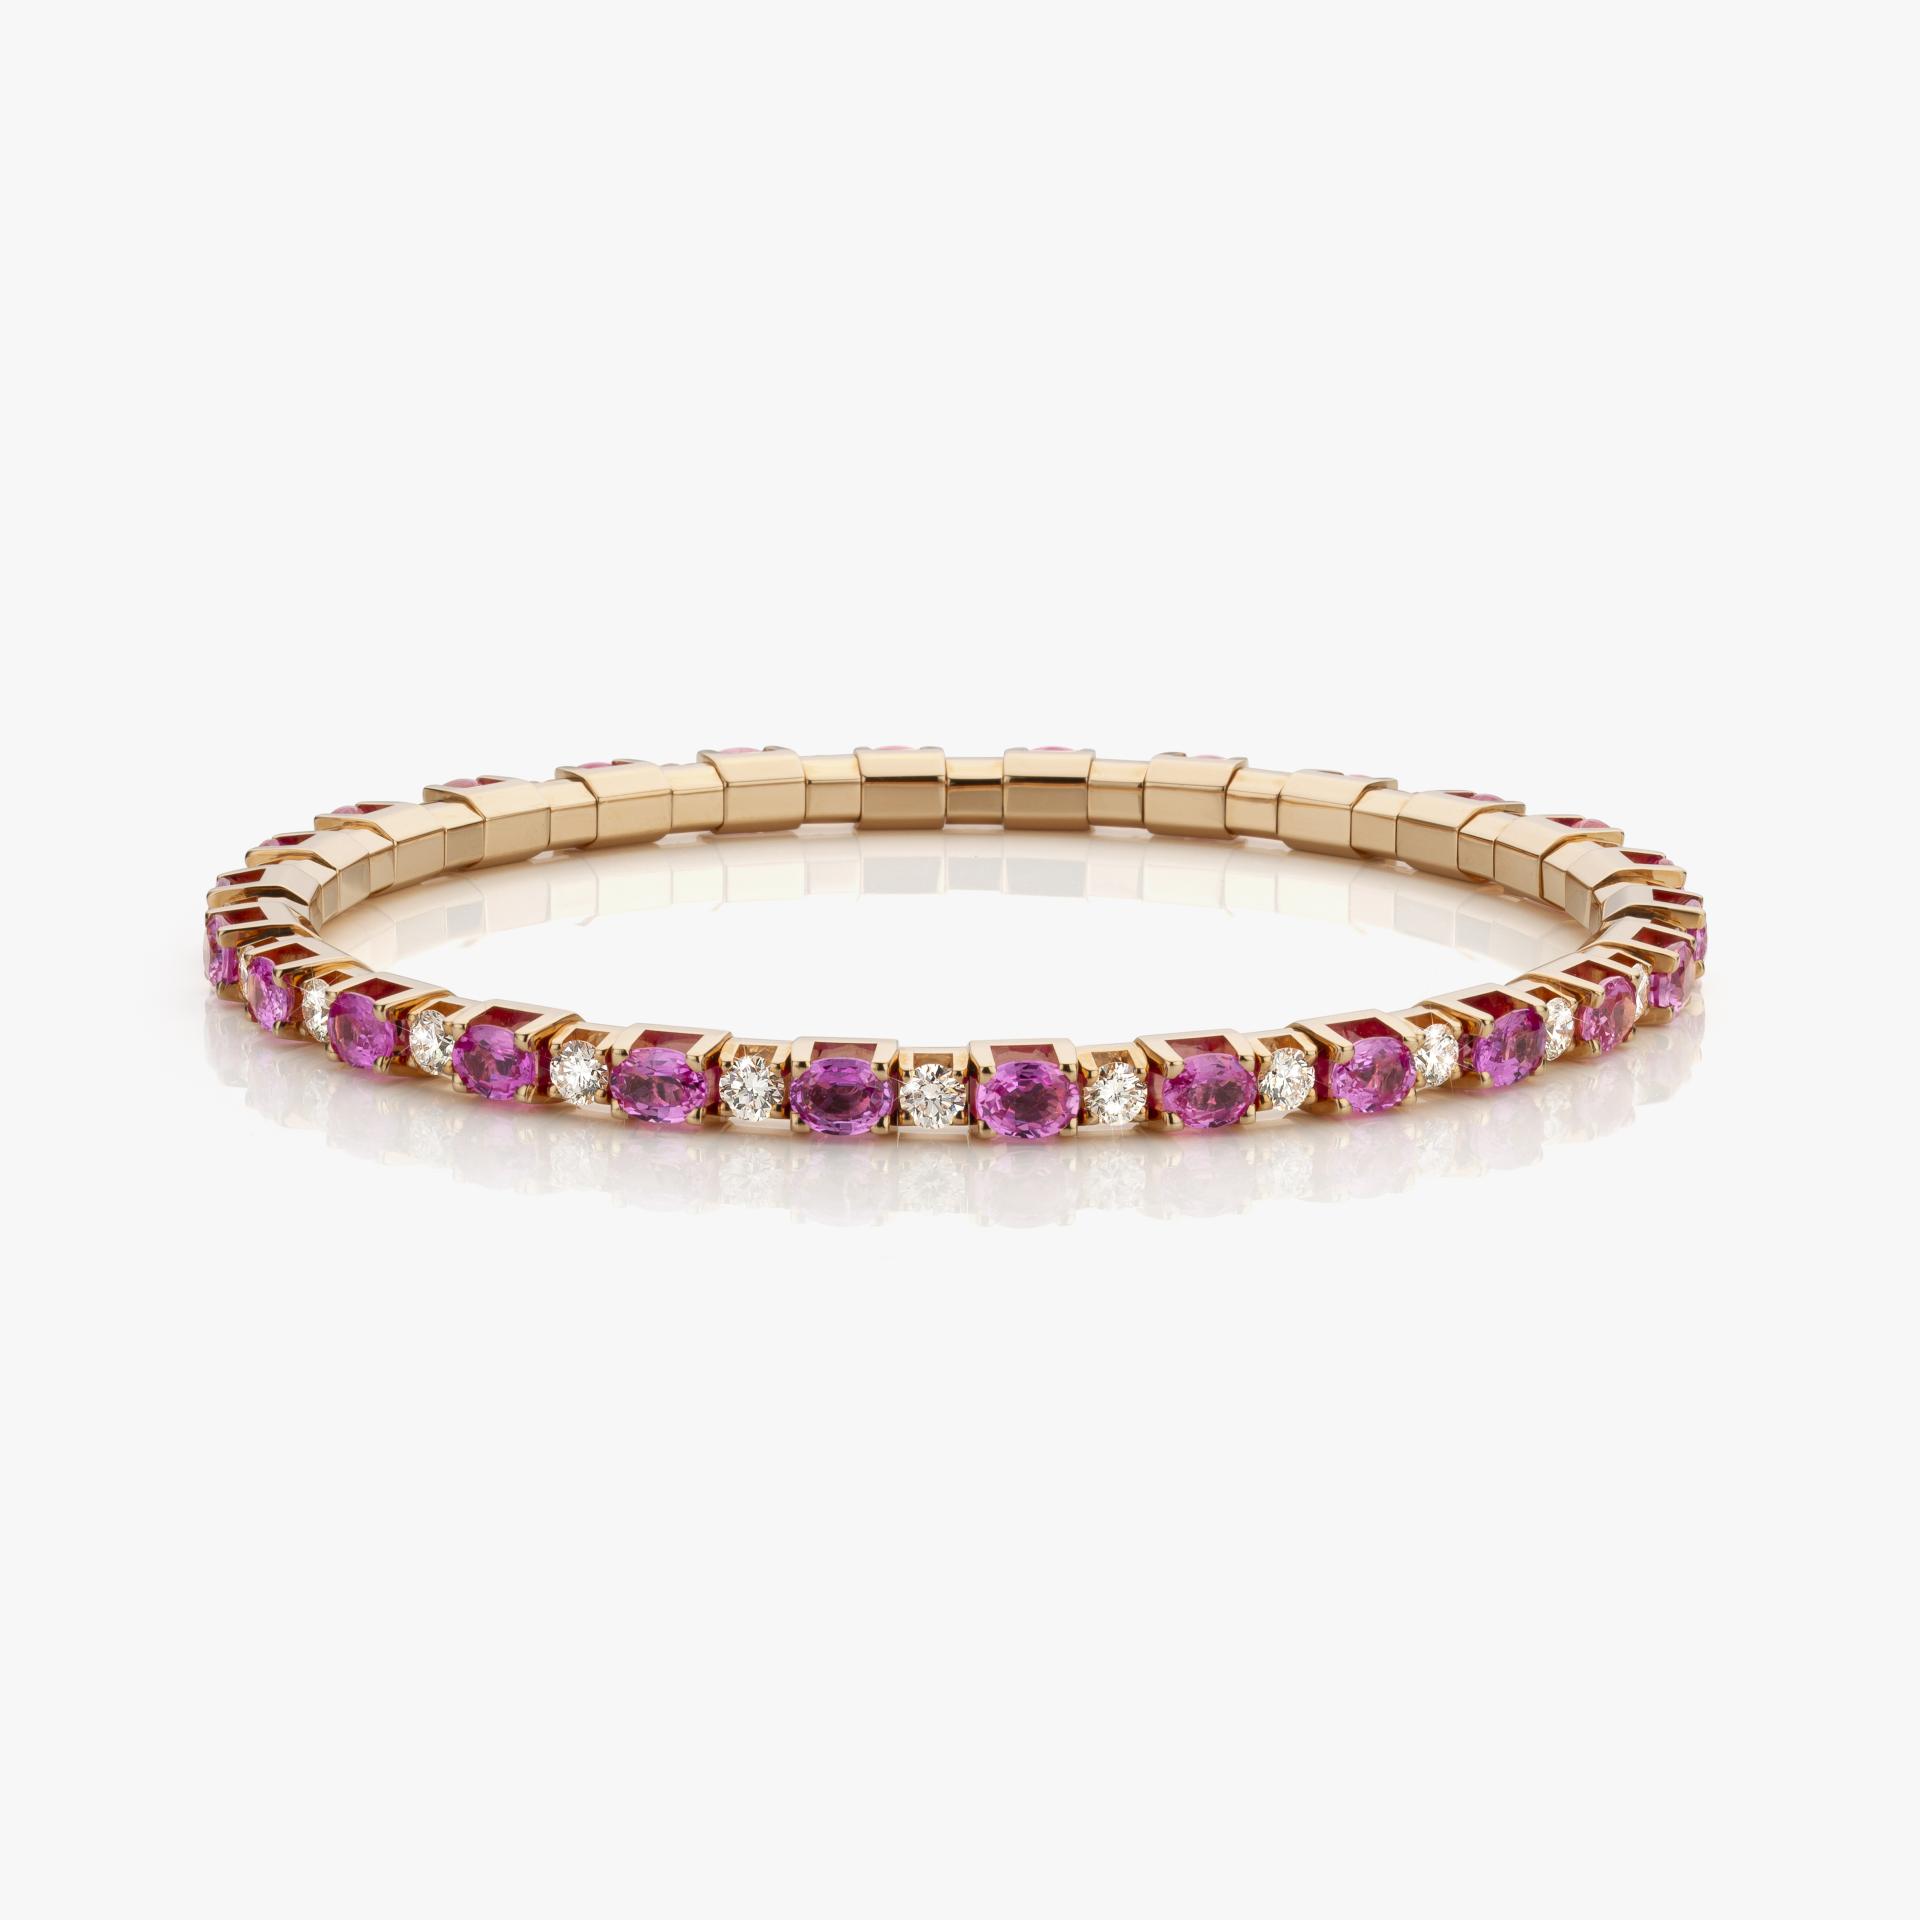 Roodgouden armband Extensible gezet met diamanten en roze saffieren made by Demeglio